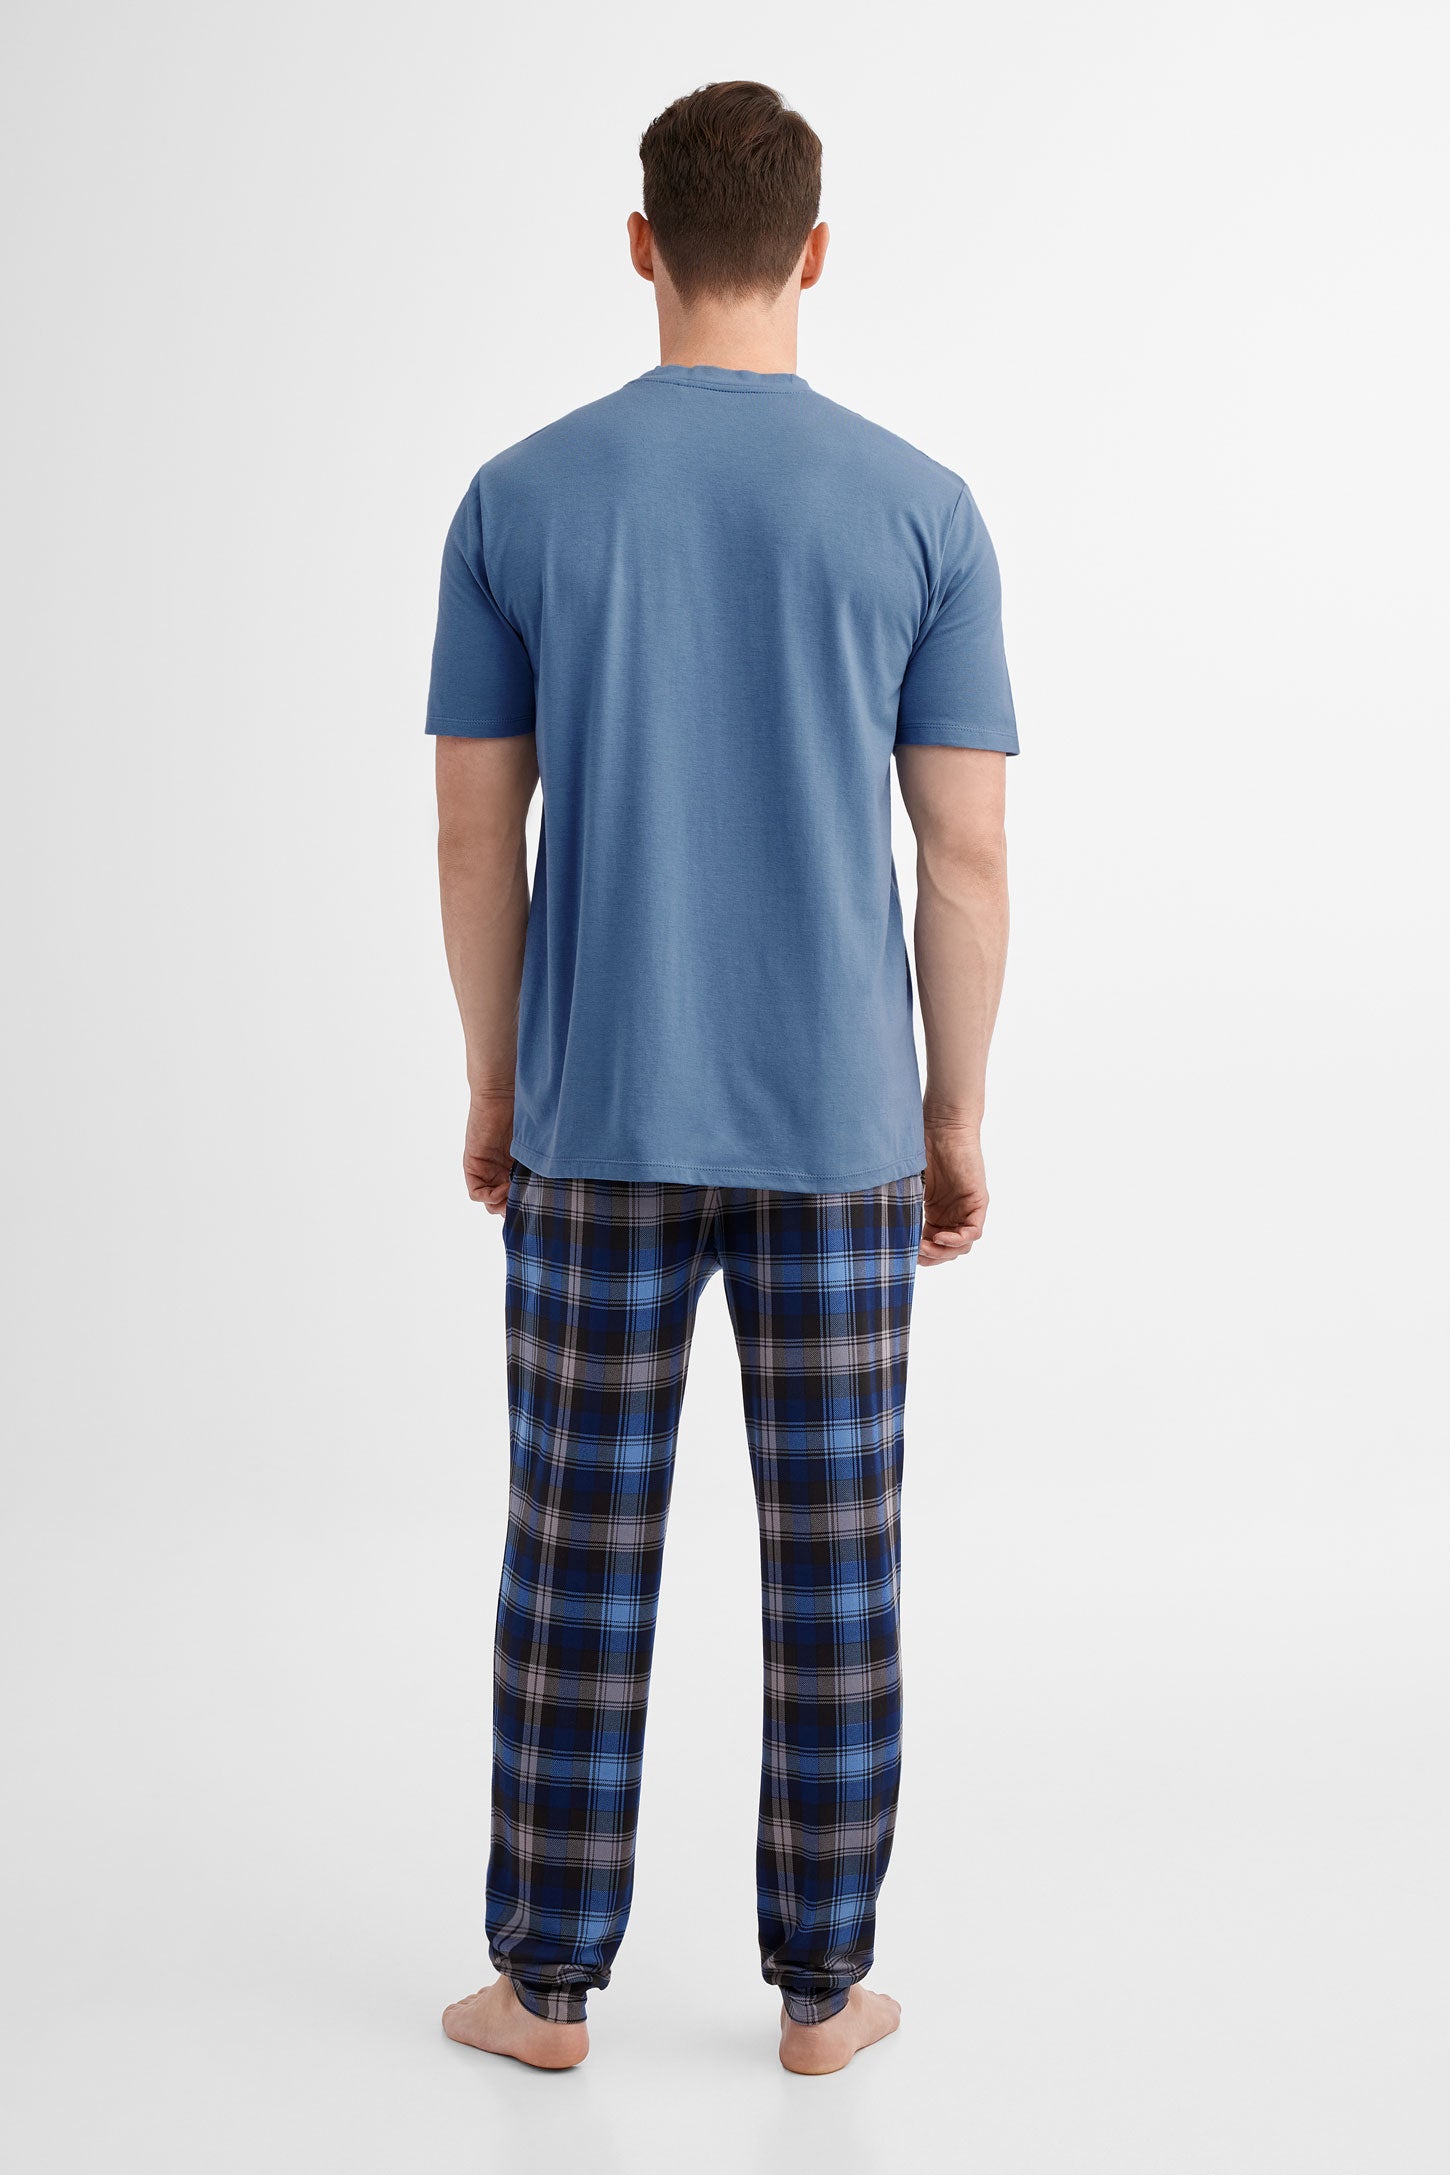 Duos futés, T-shirt pyjama en Modal, 2/40$ - Homme && BLEU